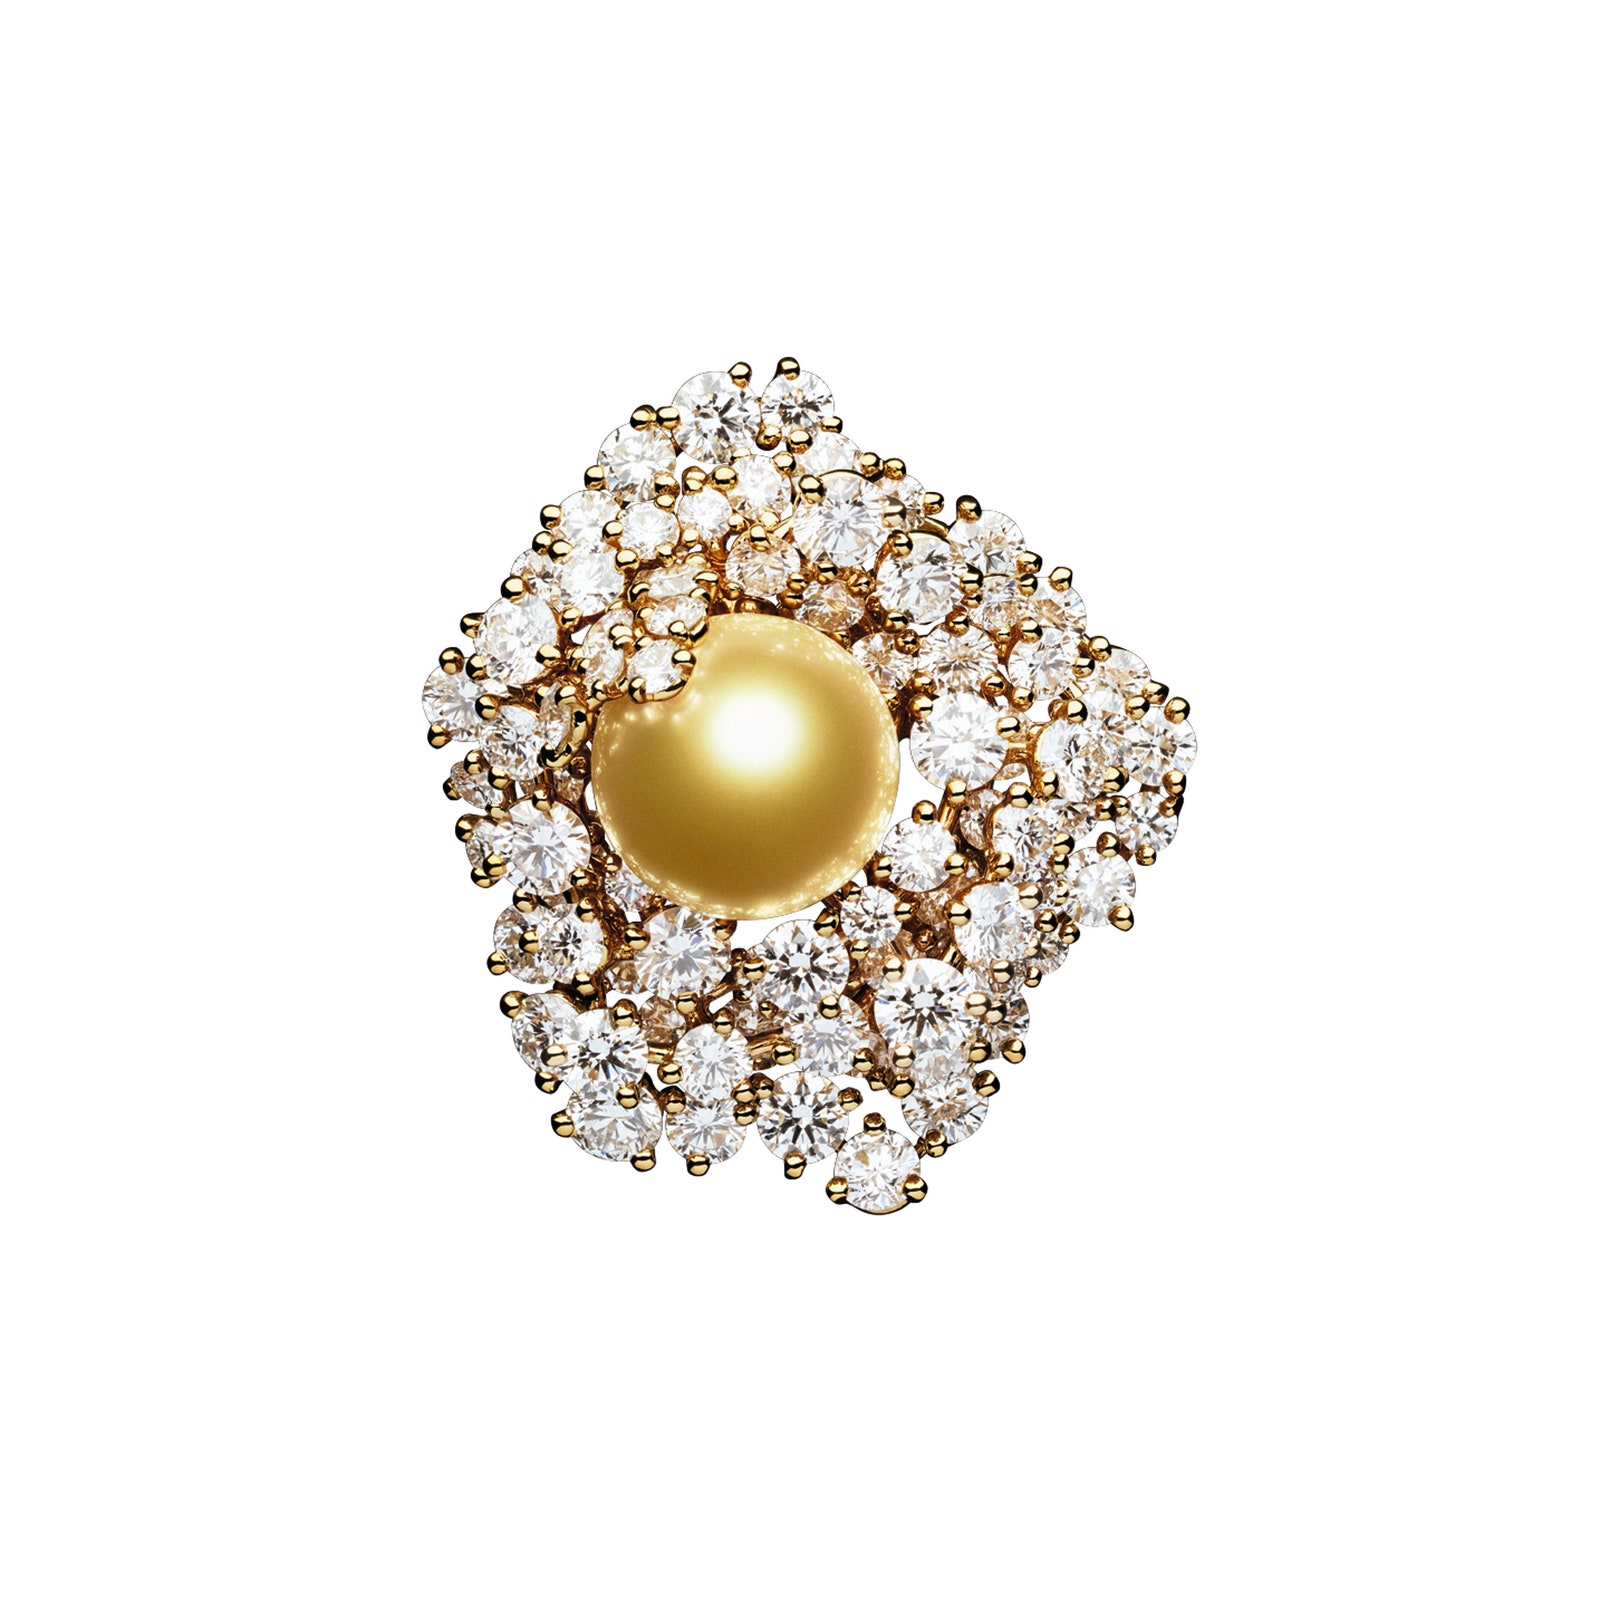 Кольцо из золота с бриллиантами и желтым жемчугом из гарнитура Rose Futuriste Golden Pearl Set.